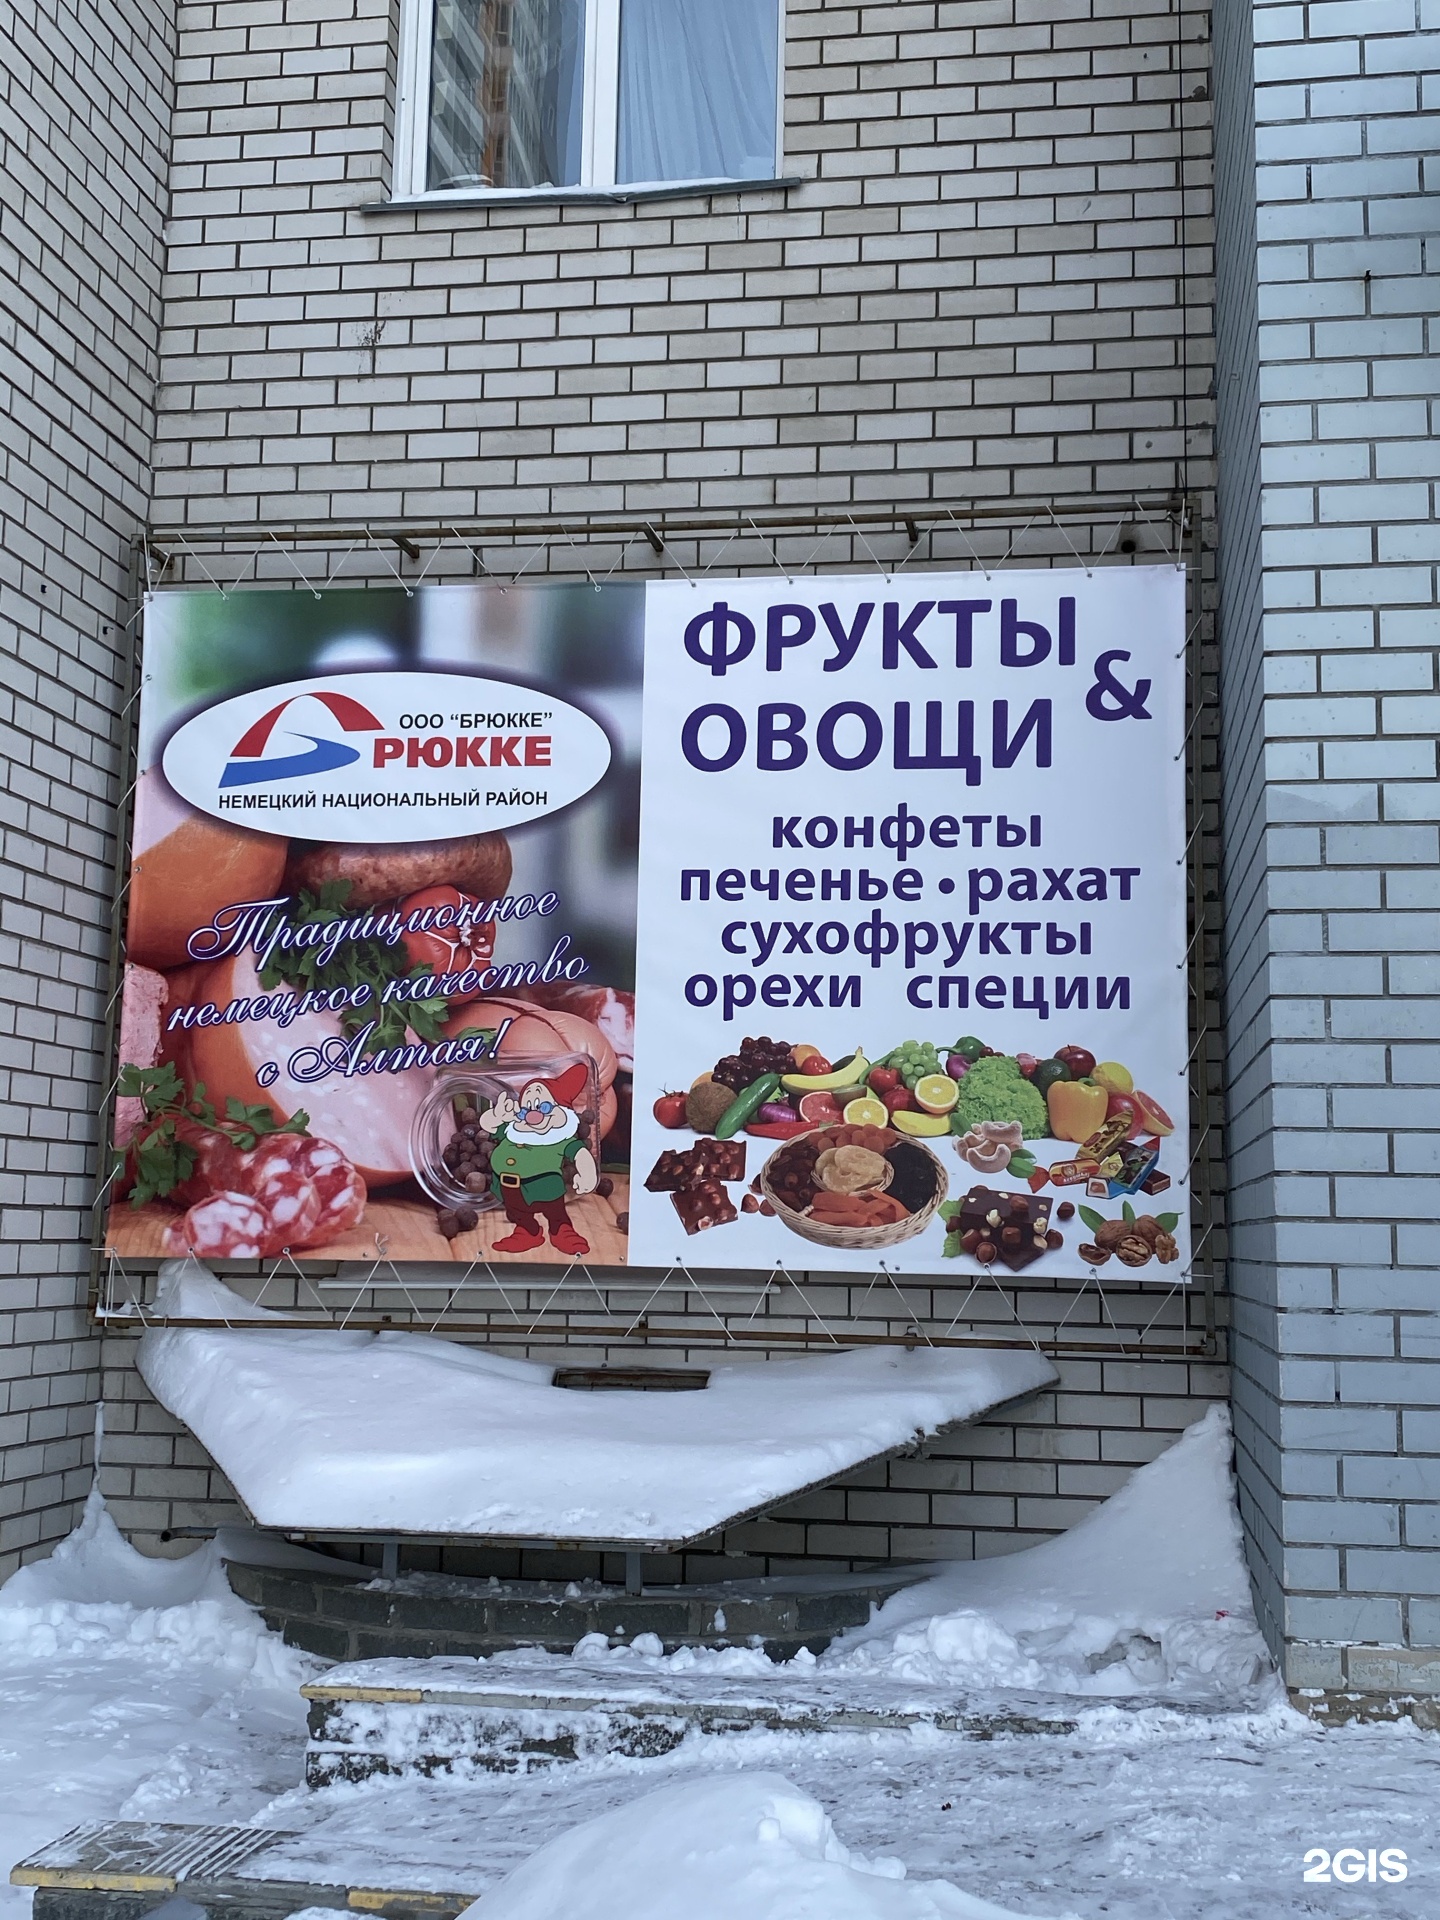 Рекламные Фото Колбасных Изделий И Сыров